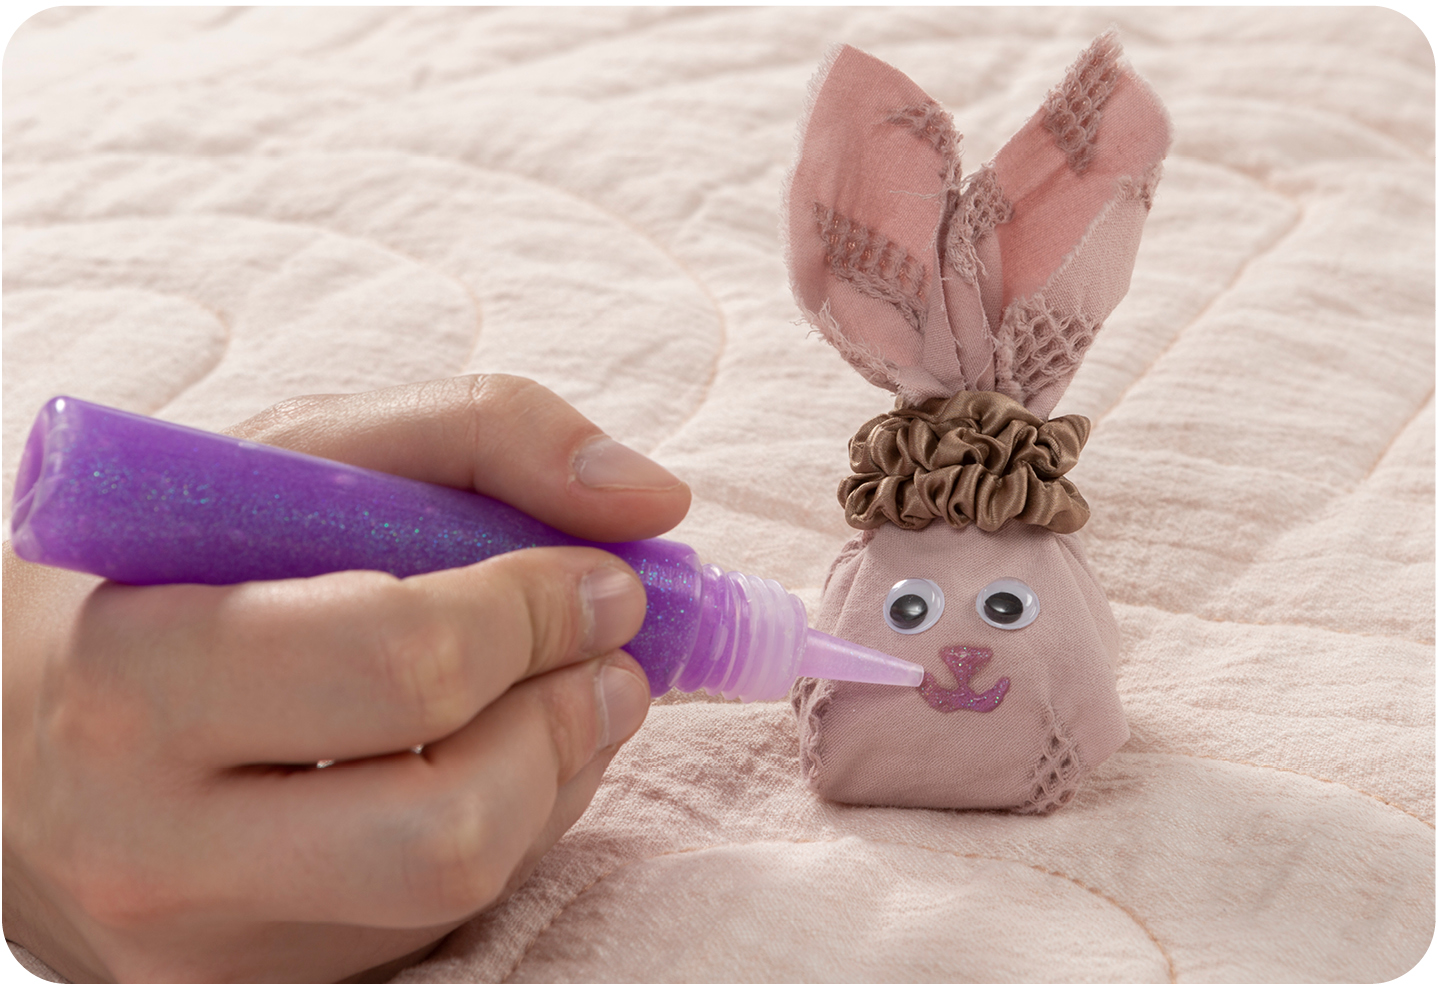 Dessiner à la main une bouche et un nez avec de la colle à paillettes violette sur la tête du lapin de Pâques DIY.